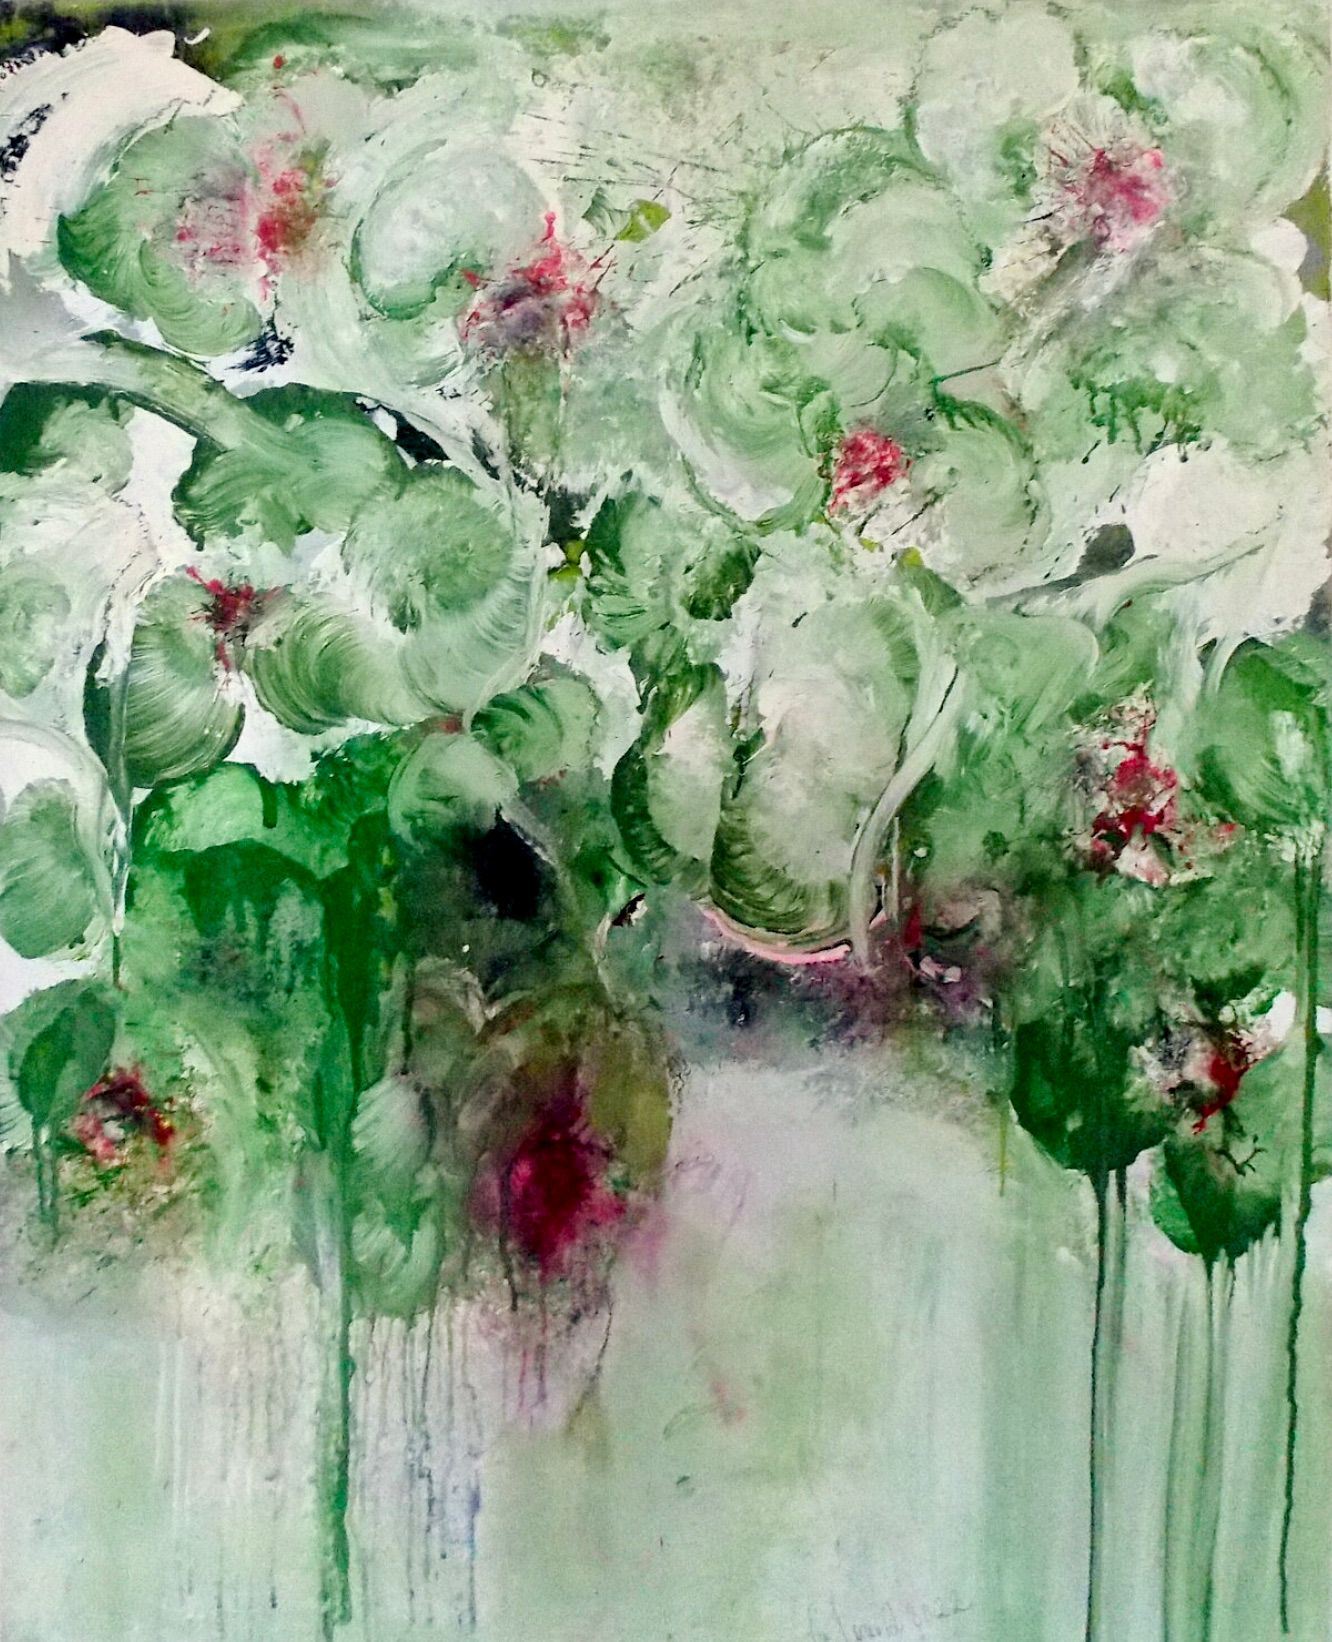 In Christa Haack's "Im Rausch der Blumen 6" Expressionistisches Abstraktes Blumengemälde dominieren die Farben Grün, Beige, und Rot.